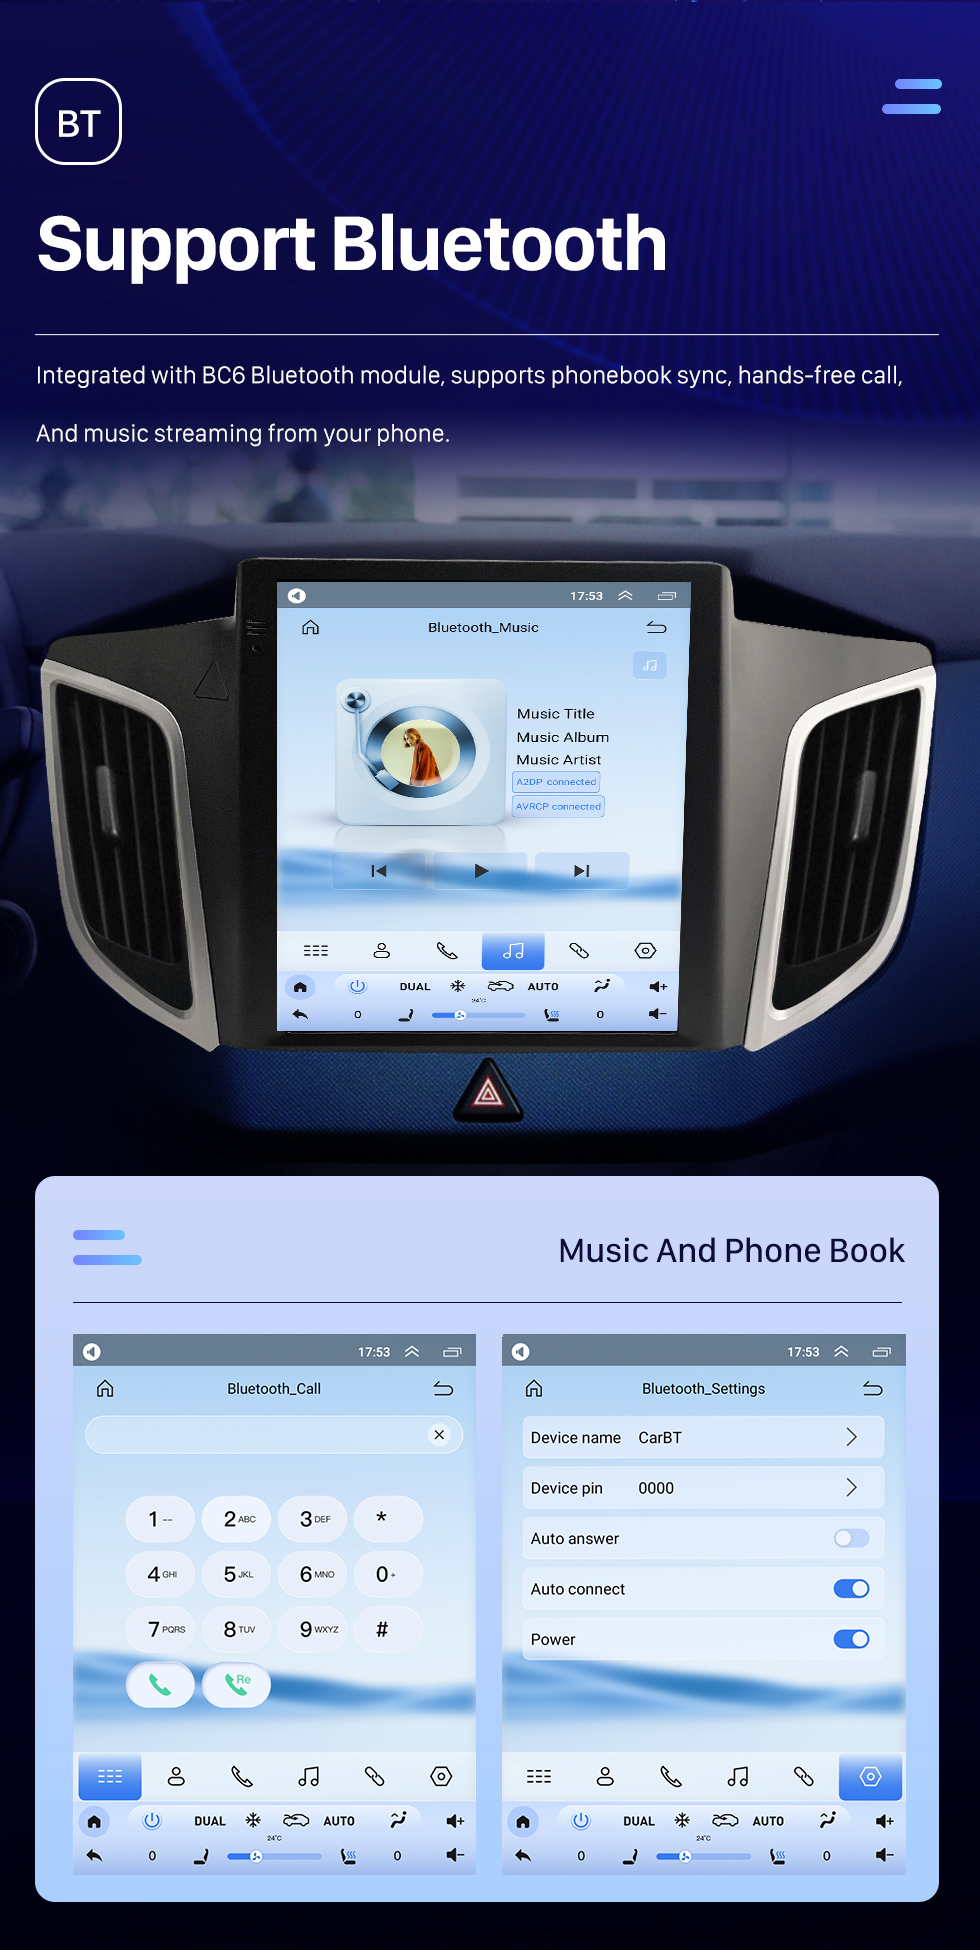 Seicane 9.7 pulgadas Android 10.0 HD Radio con pantalla táctil para 2014 2015 Hyundai IX25 Bluetooth Sistema de navegación GPS Wifi música USB AUX soporte DVR Reproductor de DVD OBD2 SWC Cámara de visión trasera